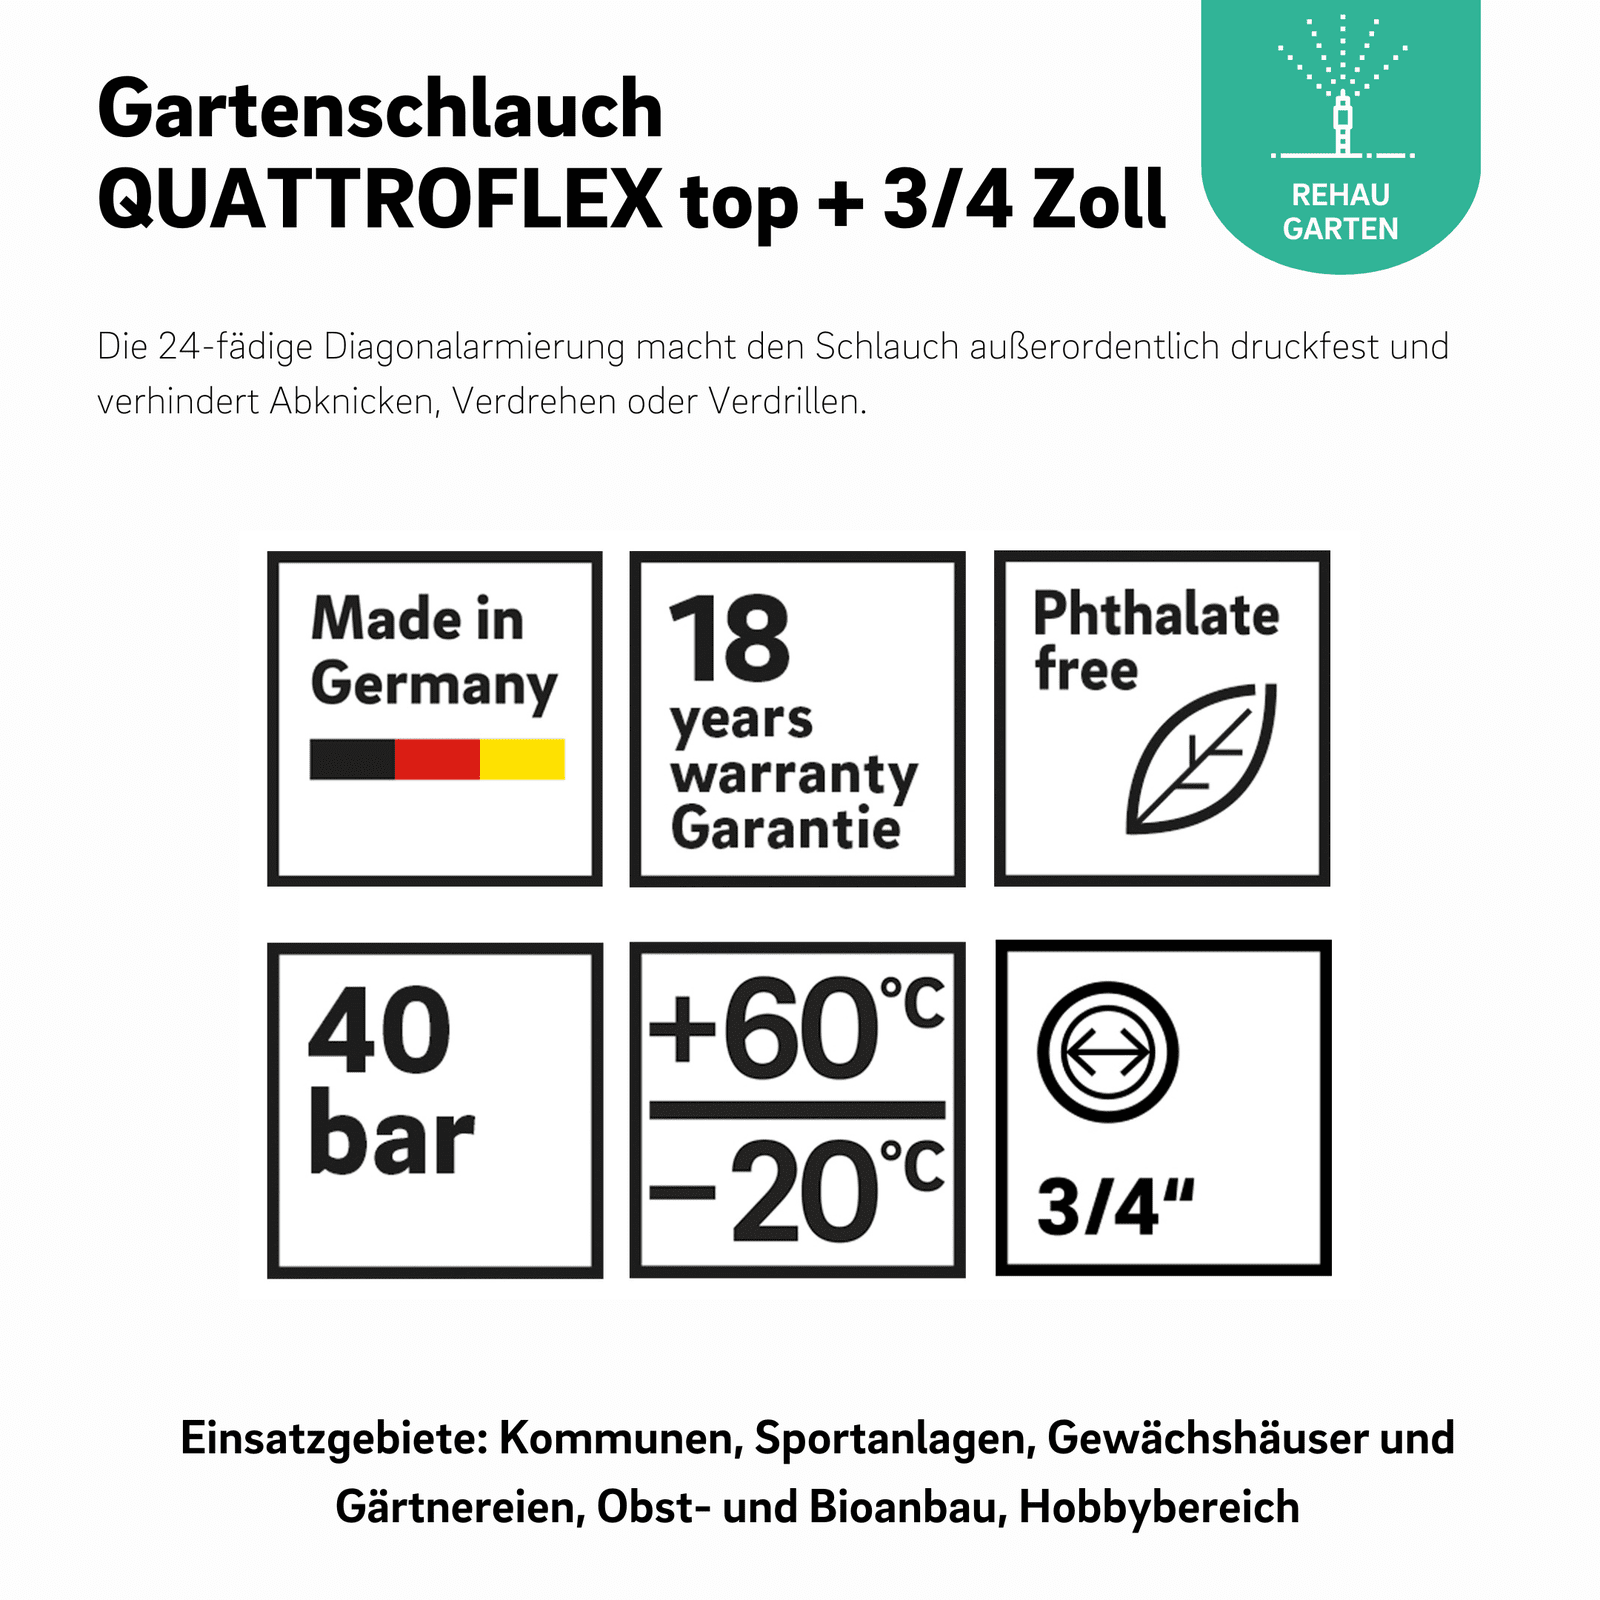 Gartenschlauch QUATTROFLEX top + 3/4 Zoll - REHAU Gartenshop